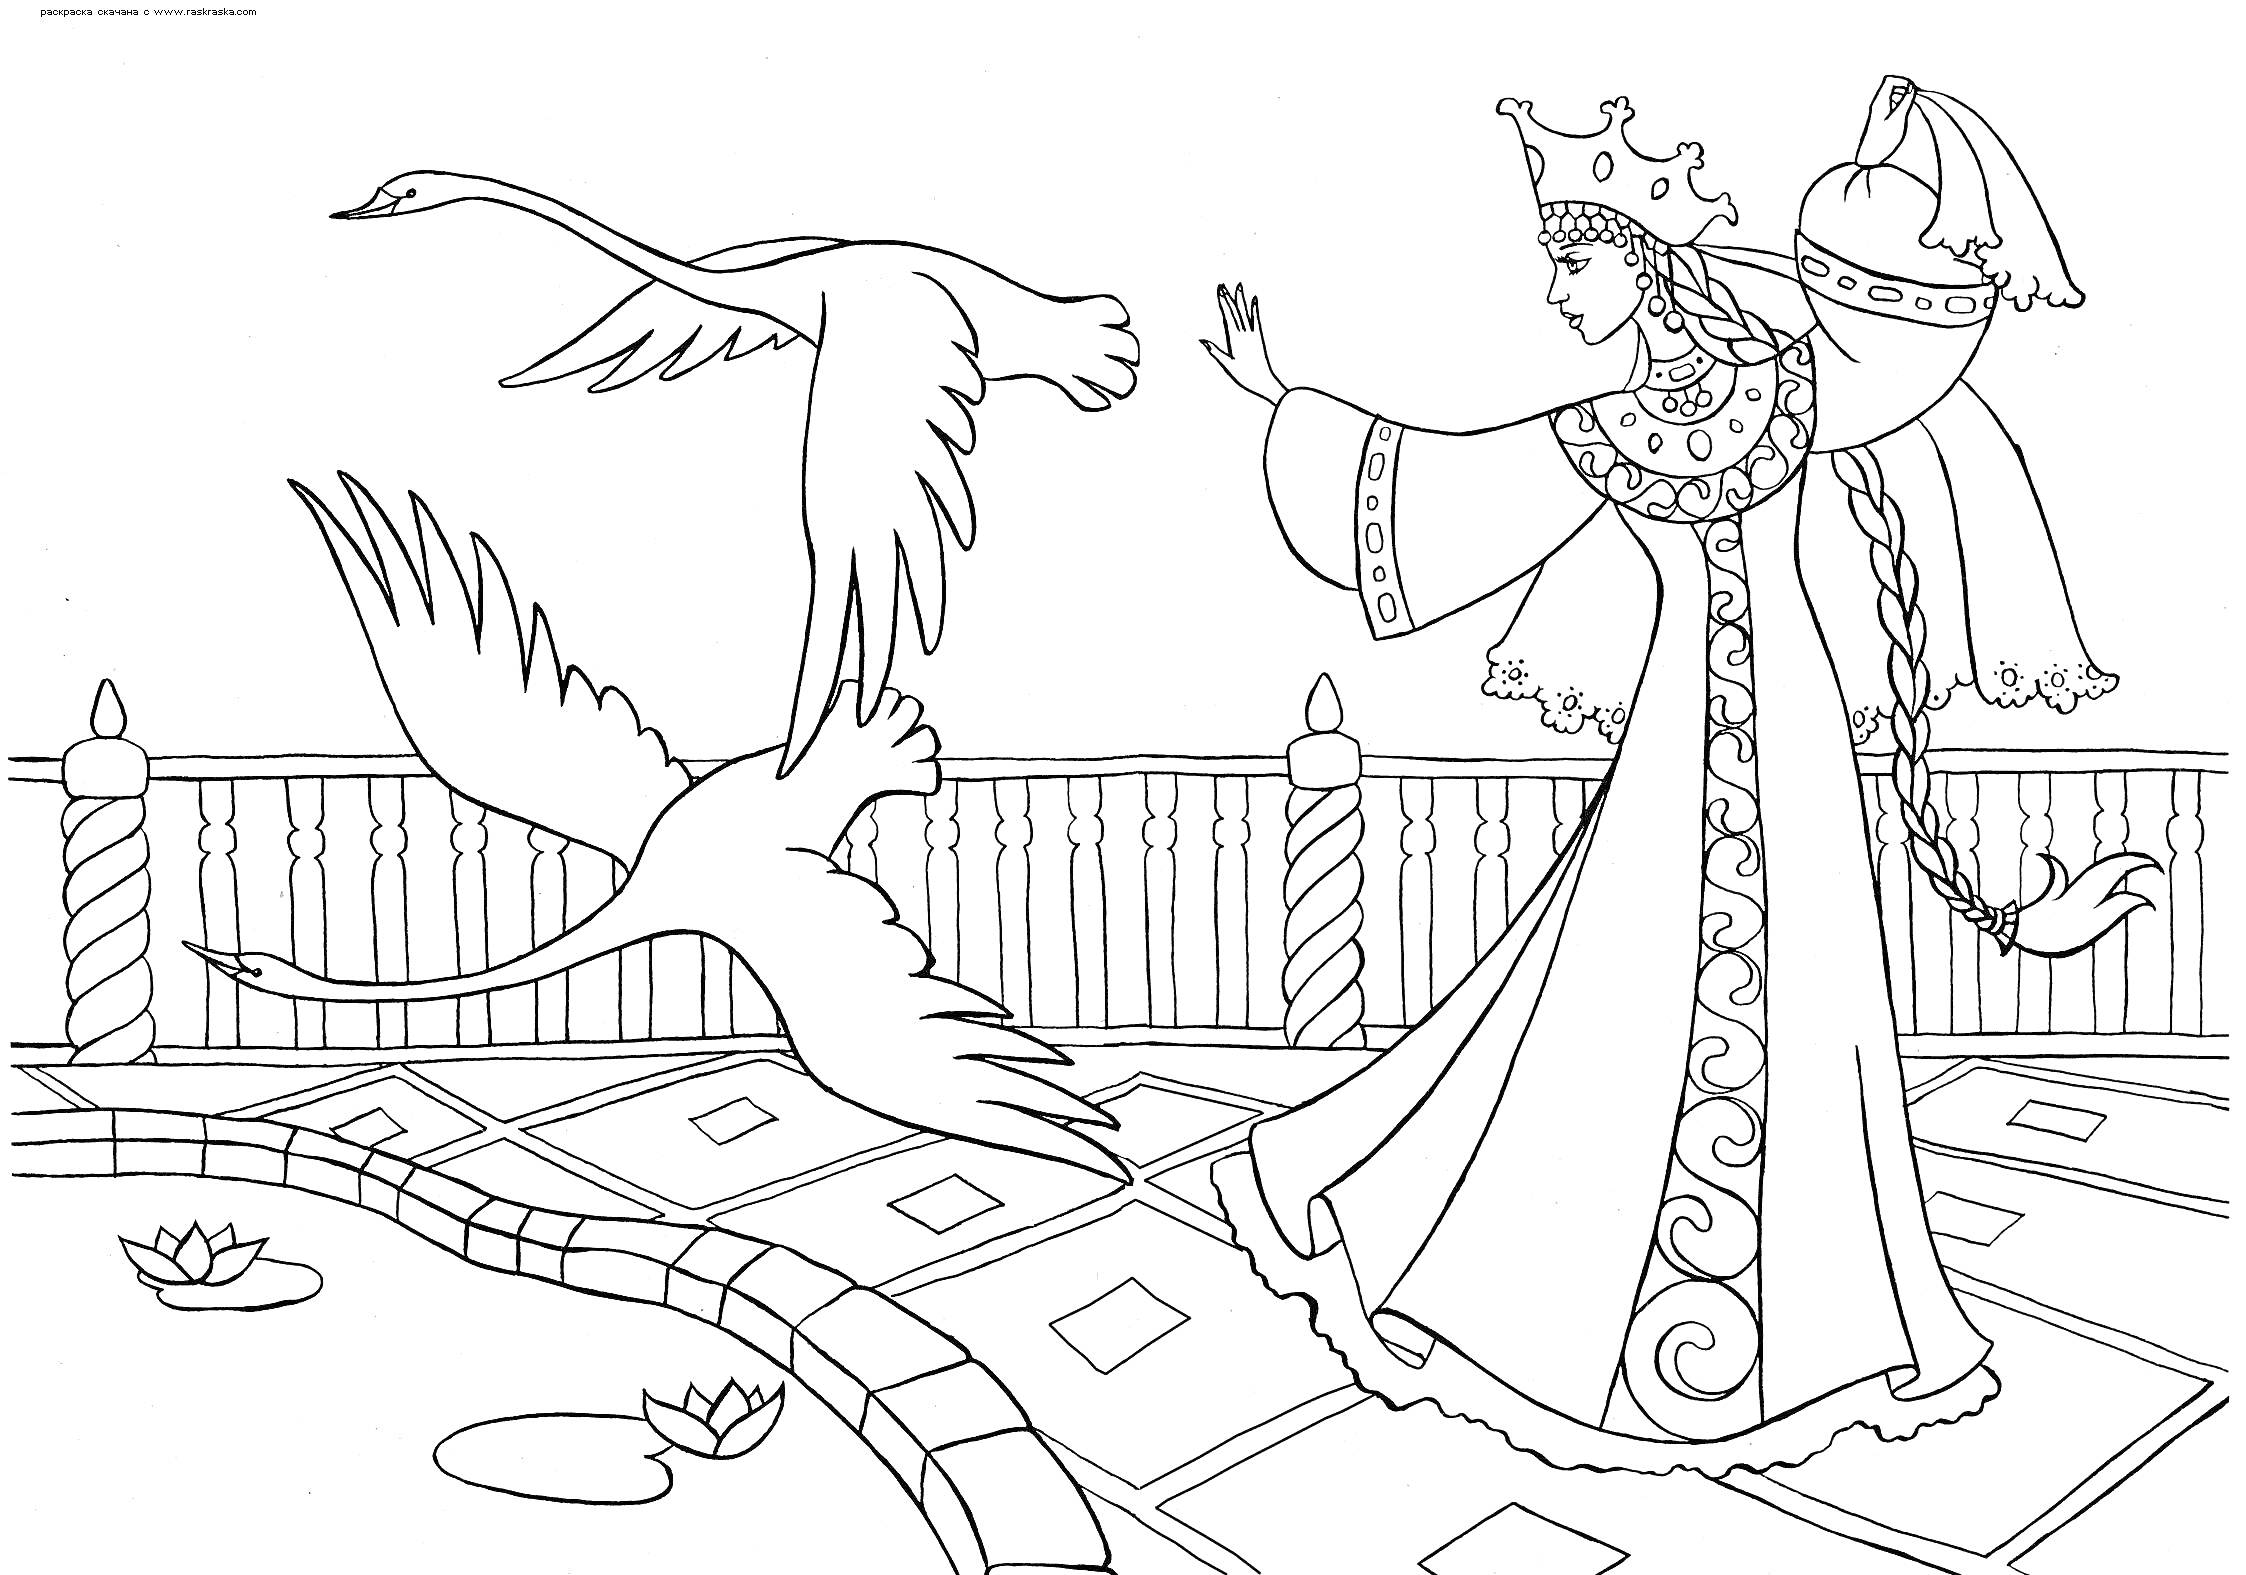 Раскраска Девушка в русском народном костюме с косой и короной на голове, машущая рукой в направлении летящих лебедей у пруда с кувшинками, на фоне ограждения.